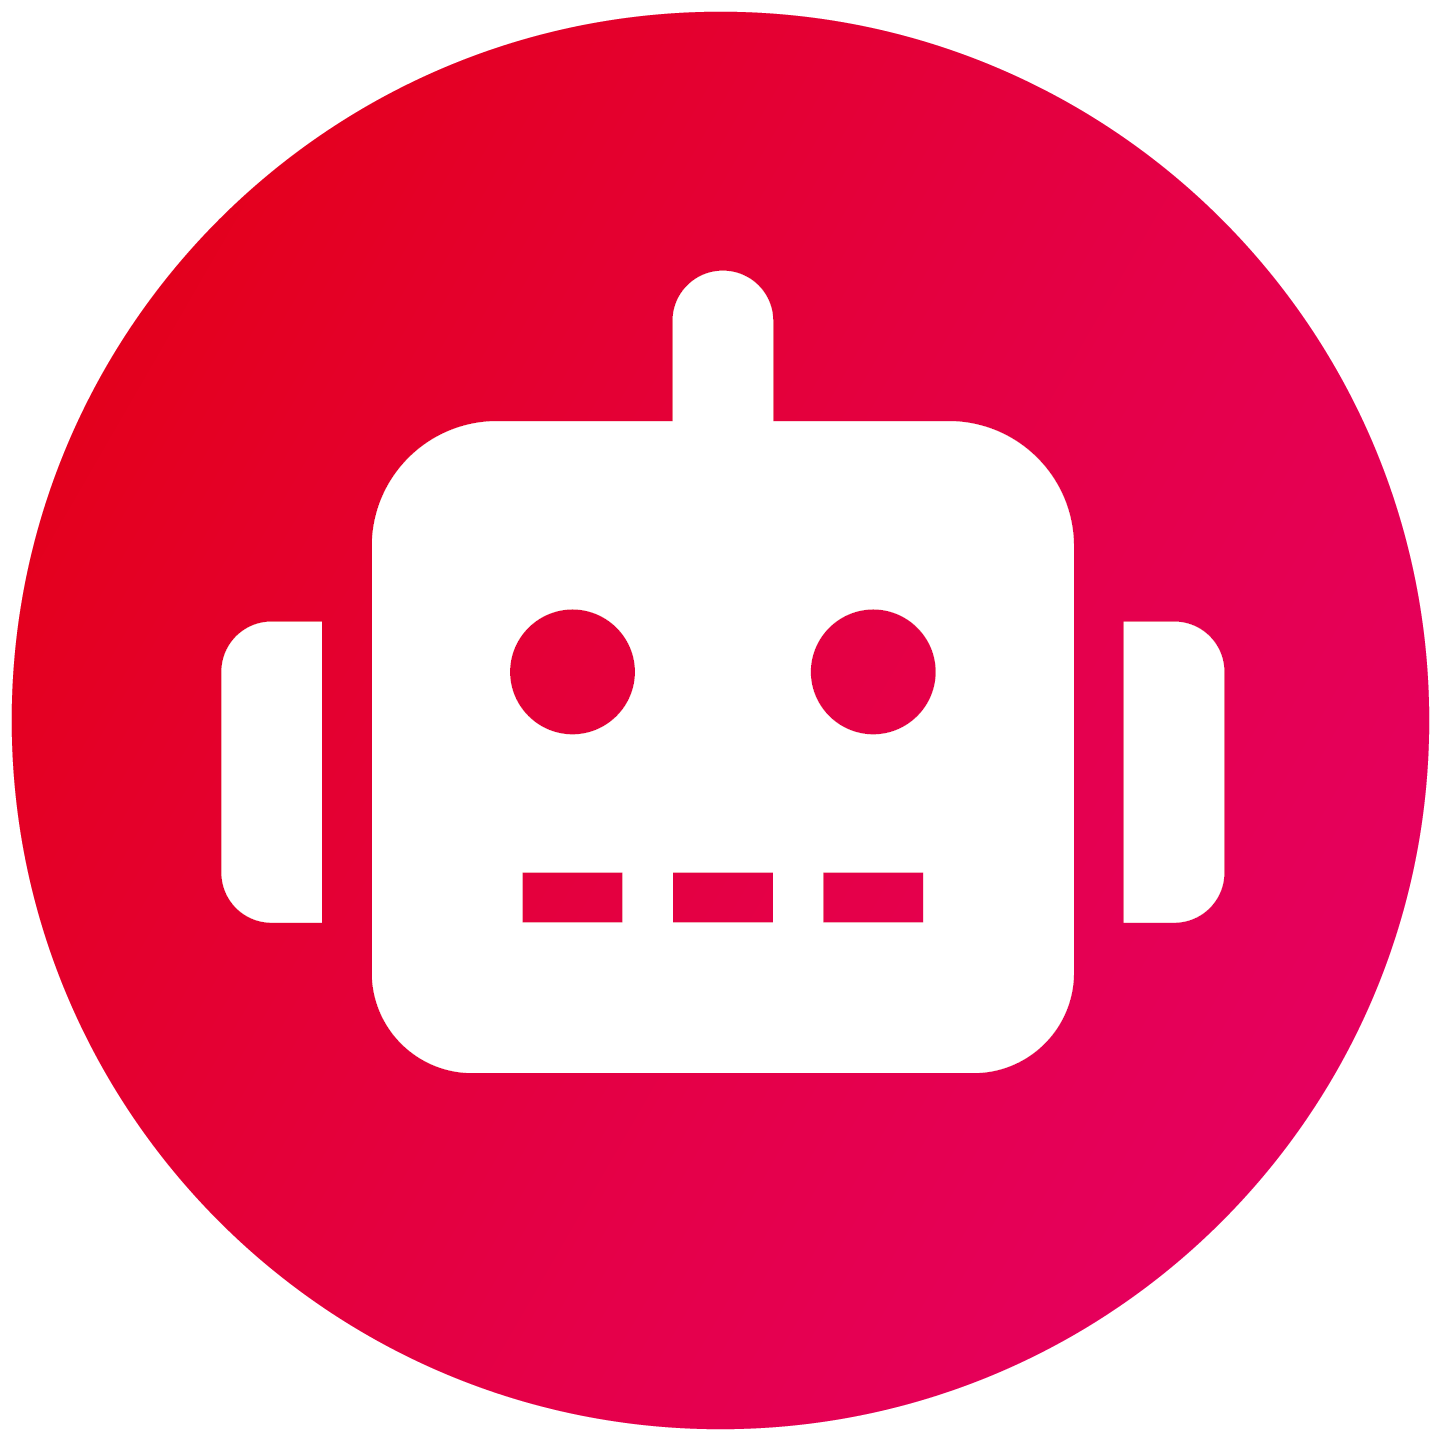 Roboter Icon